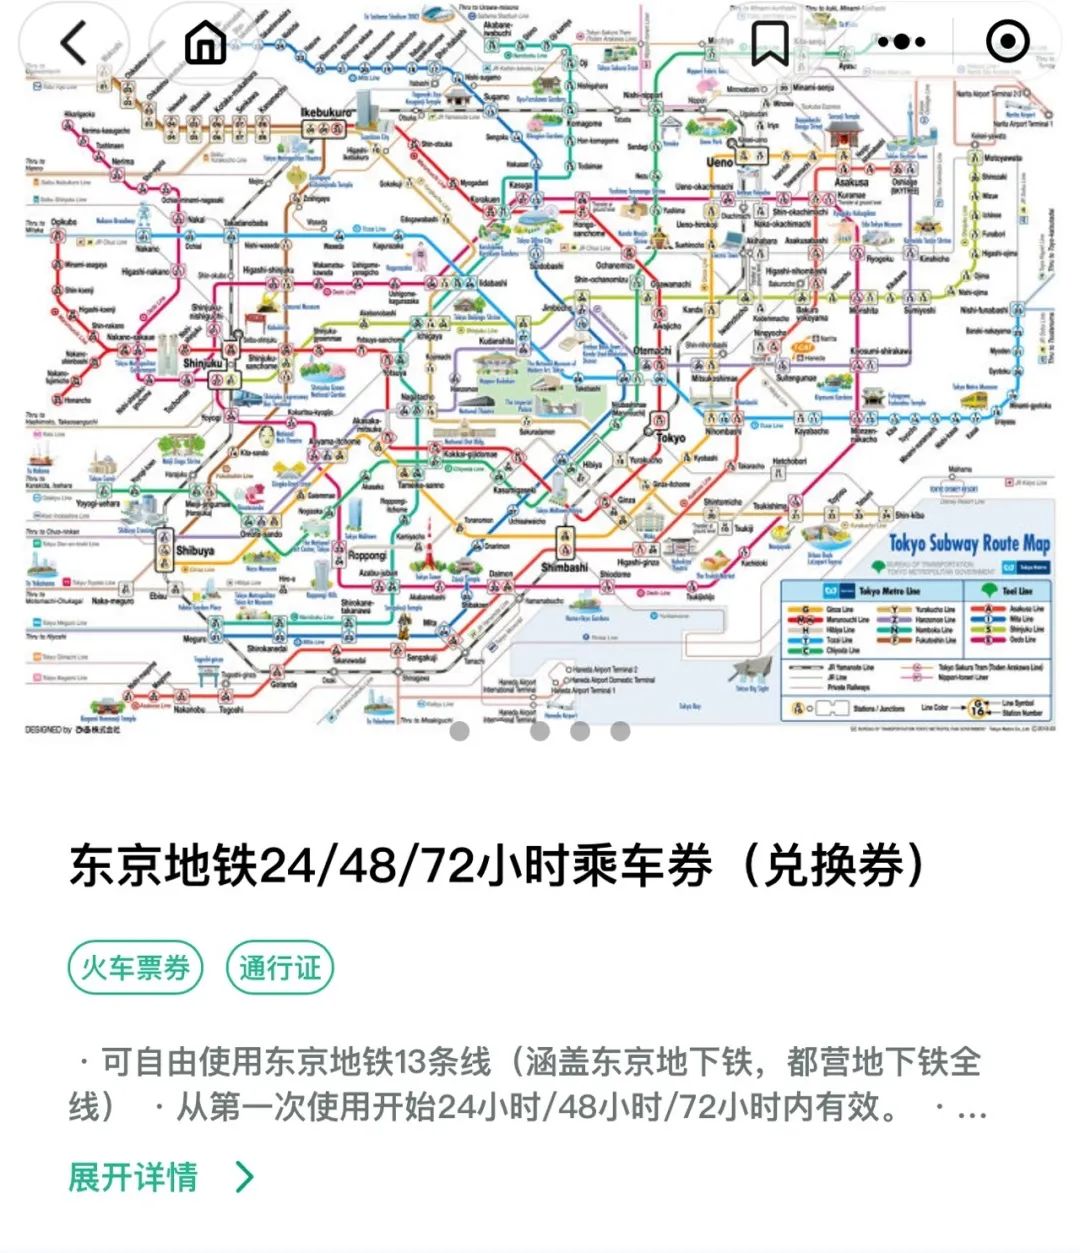 日本东京地铁推出微信购票服务，为中国旅客提供便捷出行方式